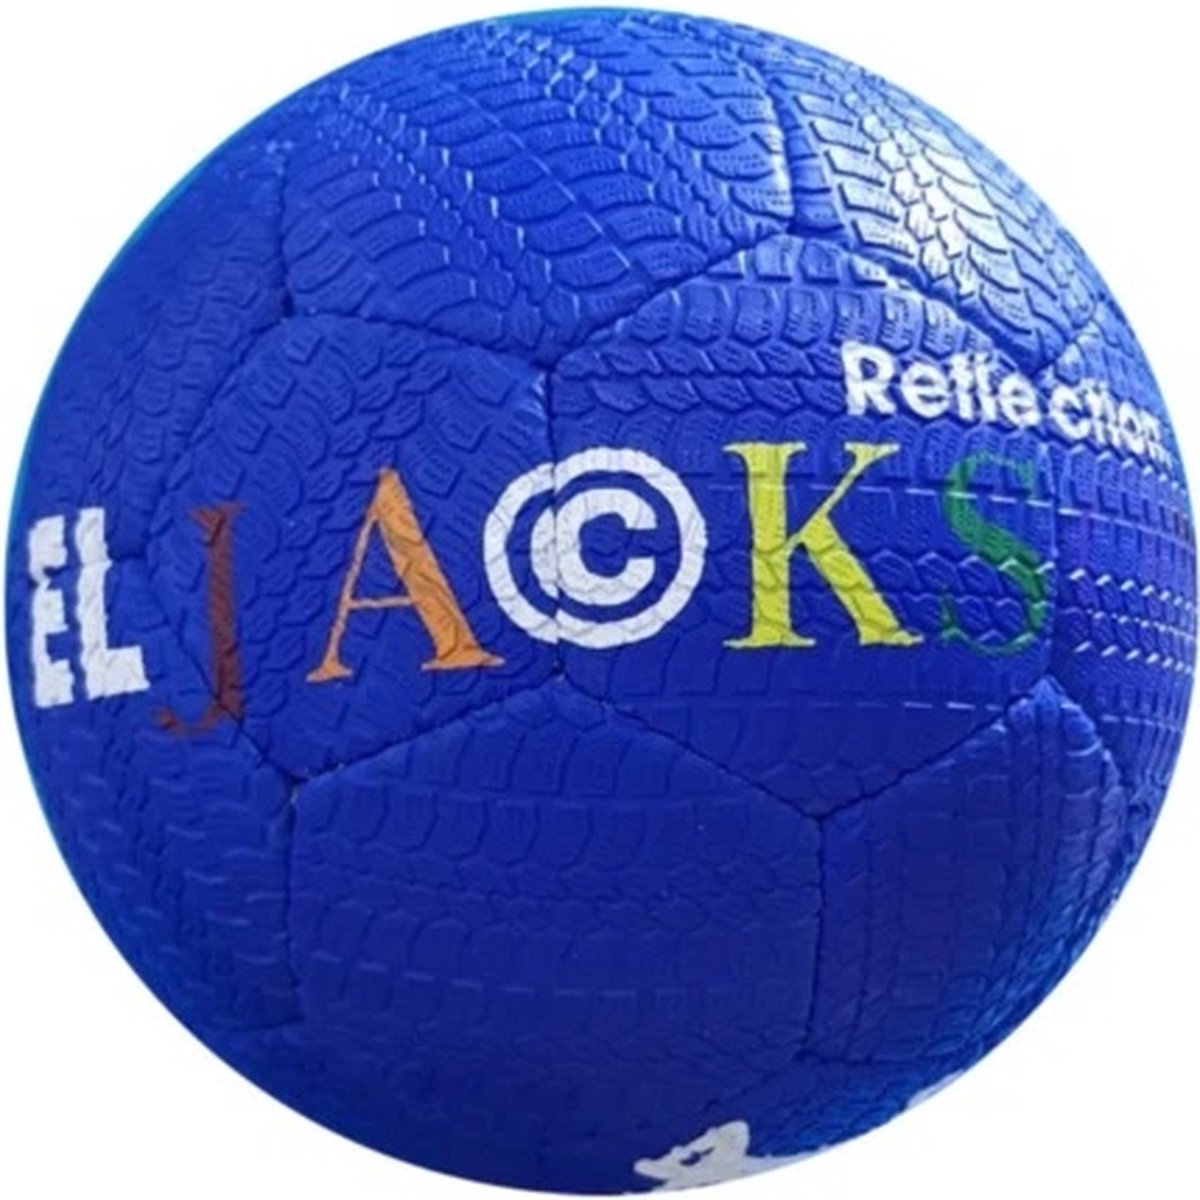 EL JACKSON BALL STONE BLUE - STRAAT BAL - FREESTYLE VOETBAL - STREET BALL - STRAATVOETBAL - ULTIEME GRIP BAL